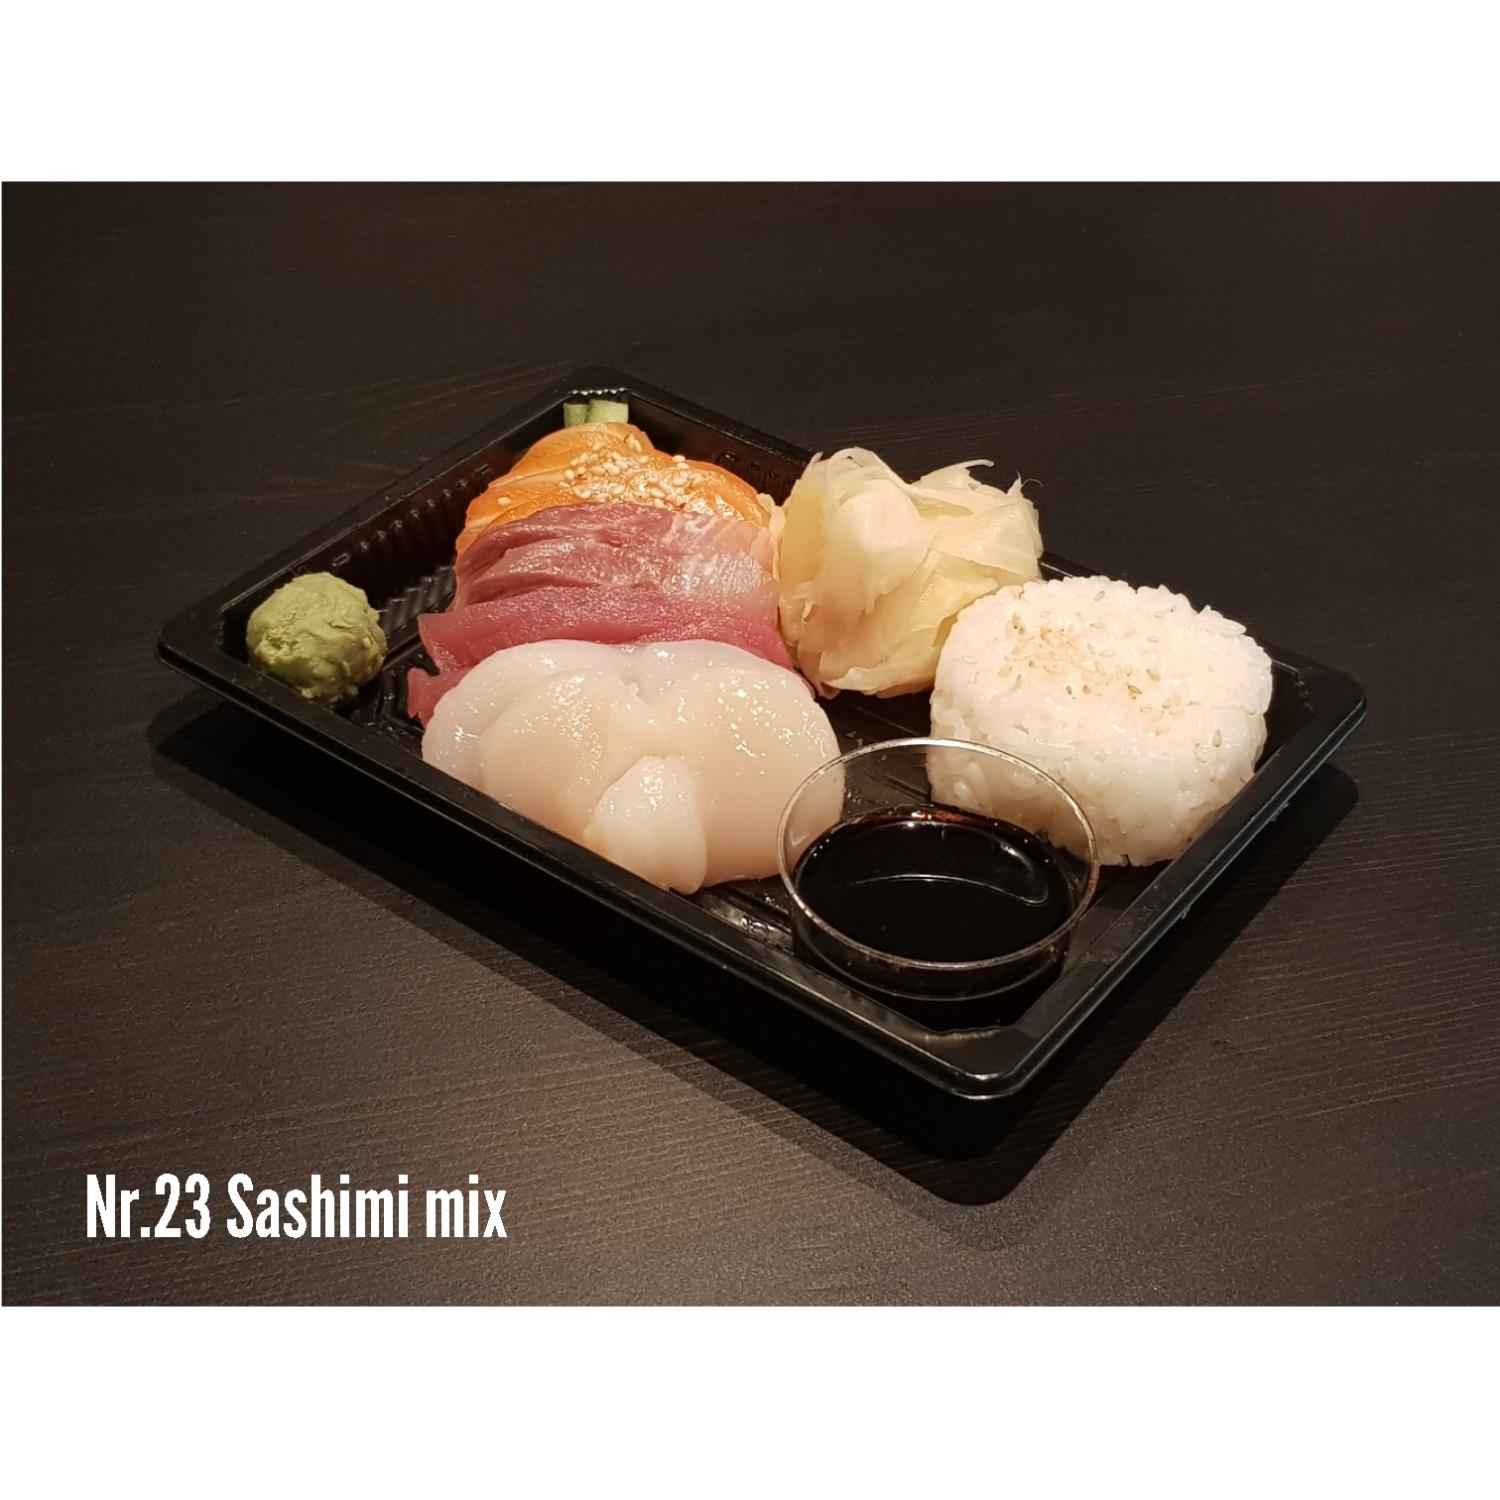 Nr. 23 Sashimi Mix